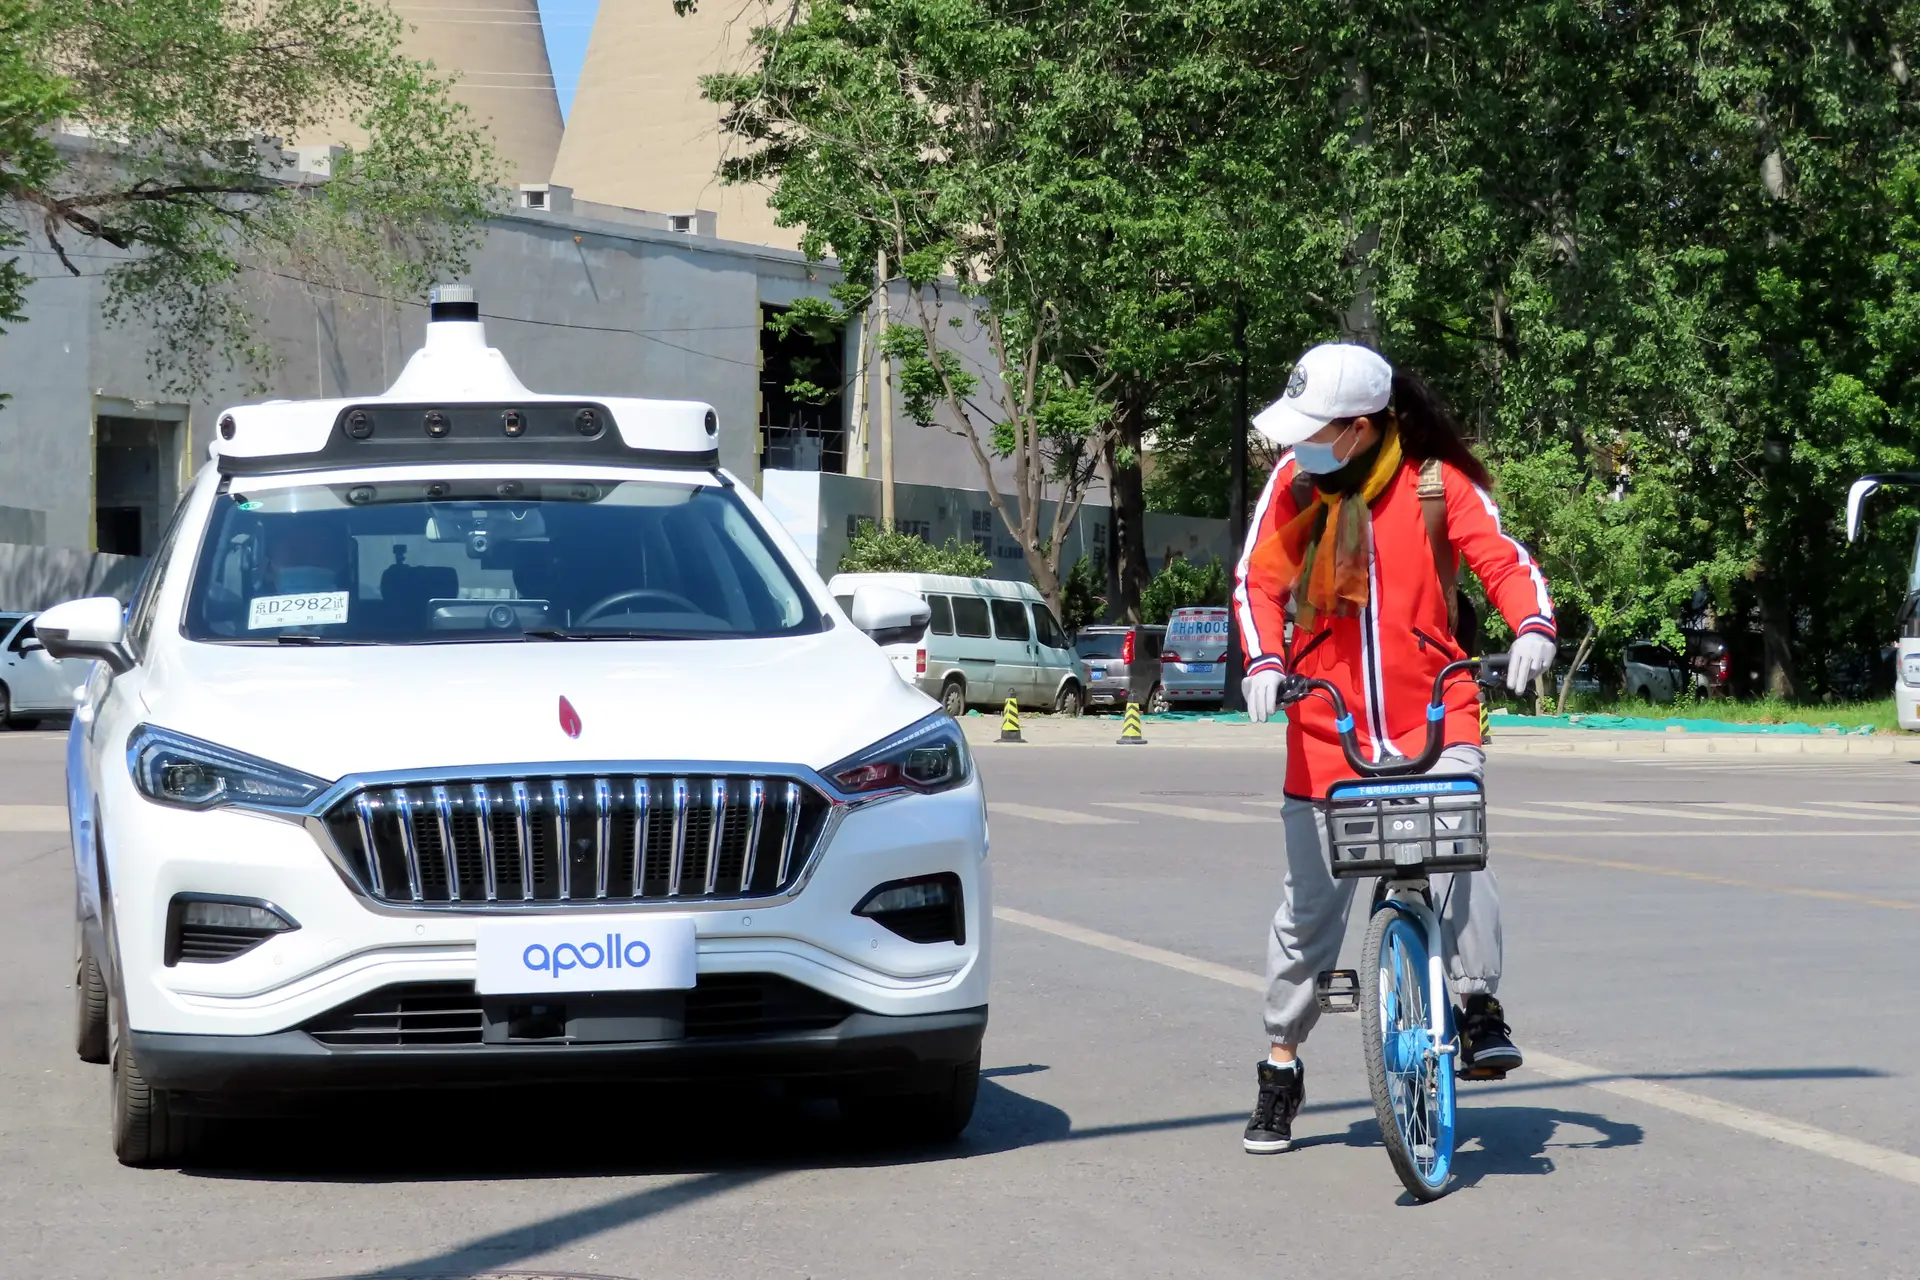 Táxis robô começam a circular nas cidades chinesas. E sem condutor